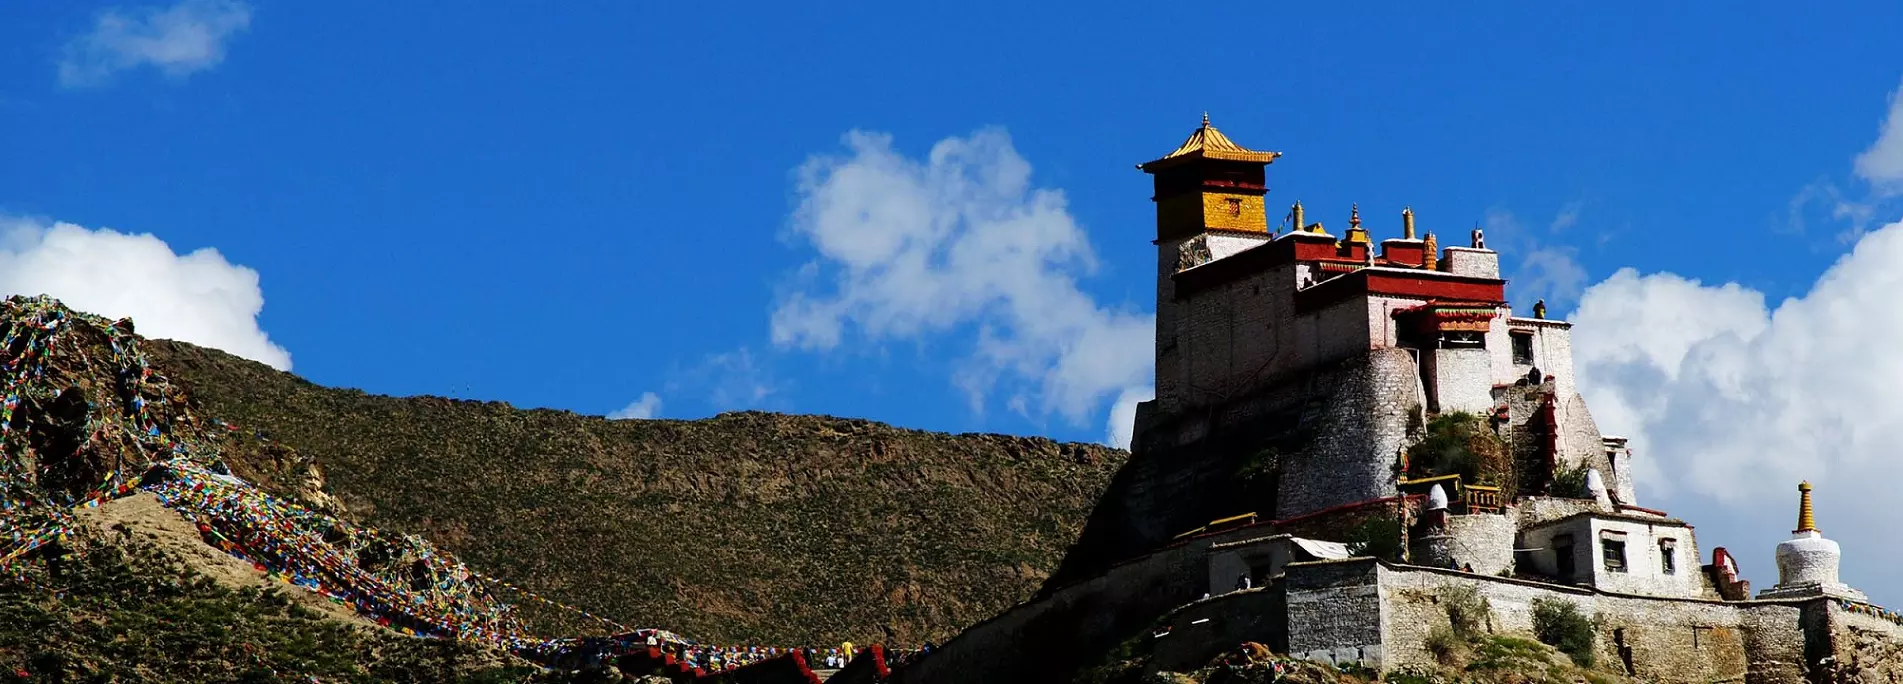 Lhasa to Tsedang Tour is an inspiring spiritual tour in Tibet.